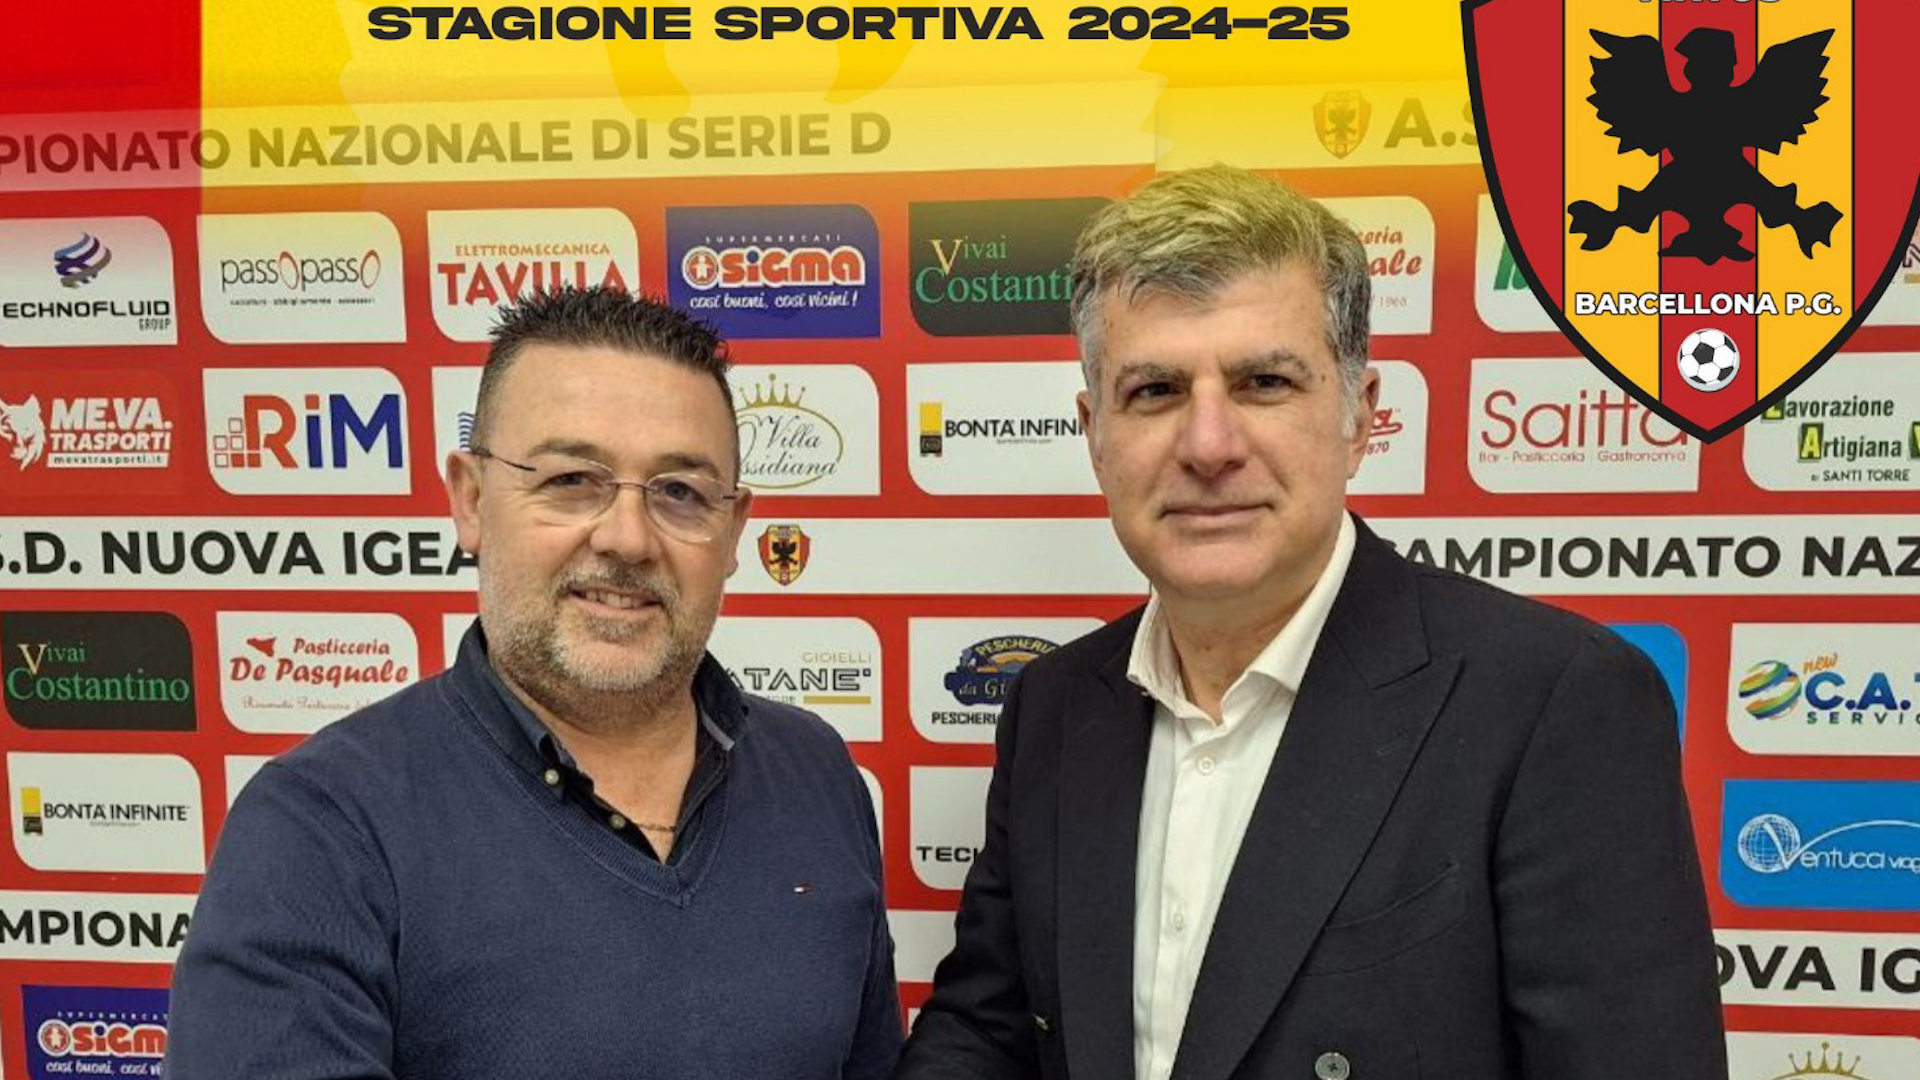 Serie D, Nuova Igea Virtus: il Club Manager per la prossima stagione sarà Nello Cassata